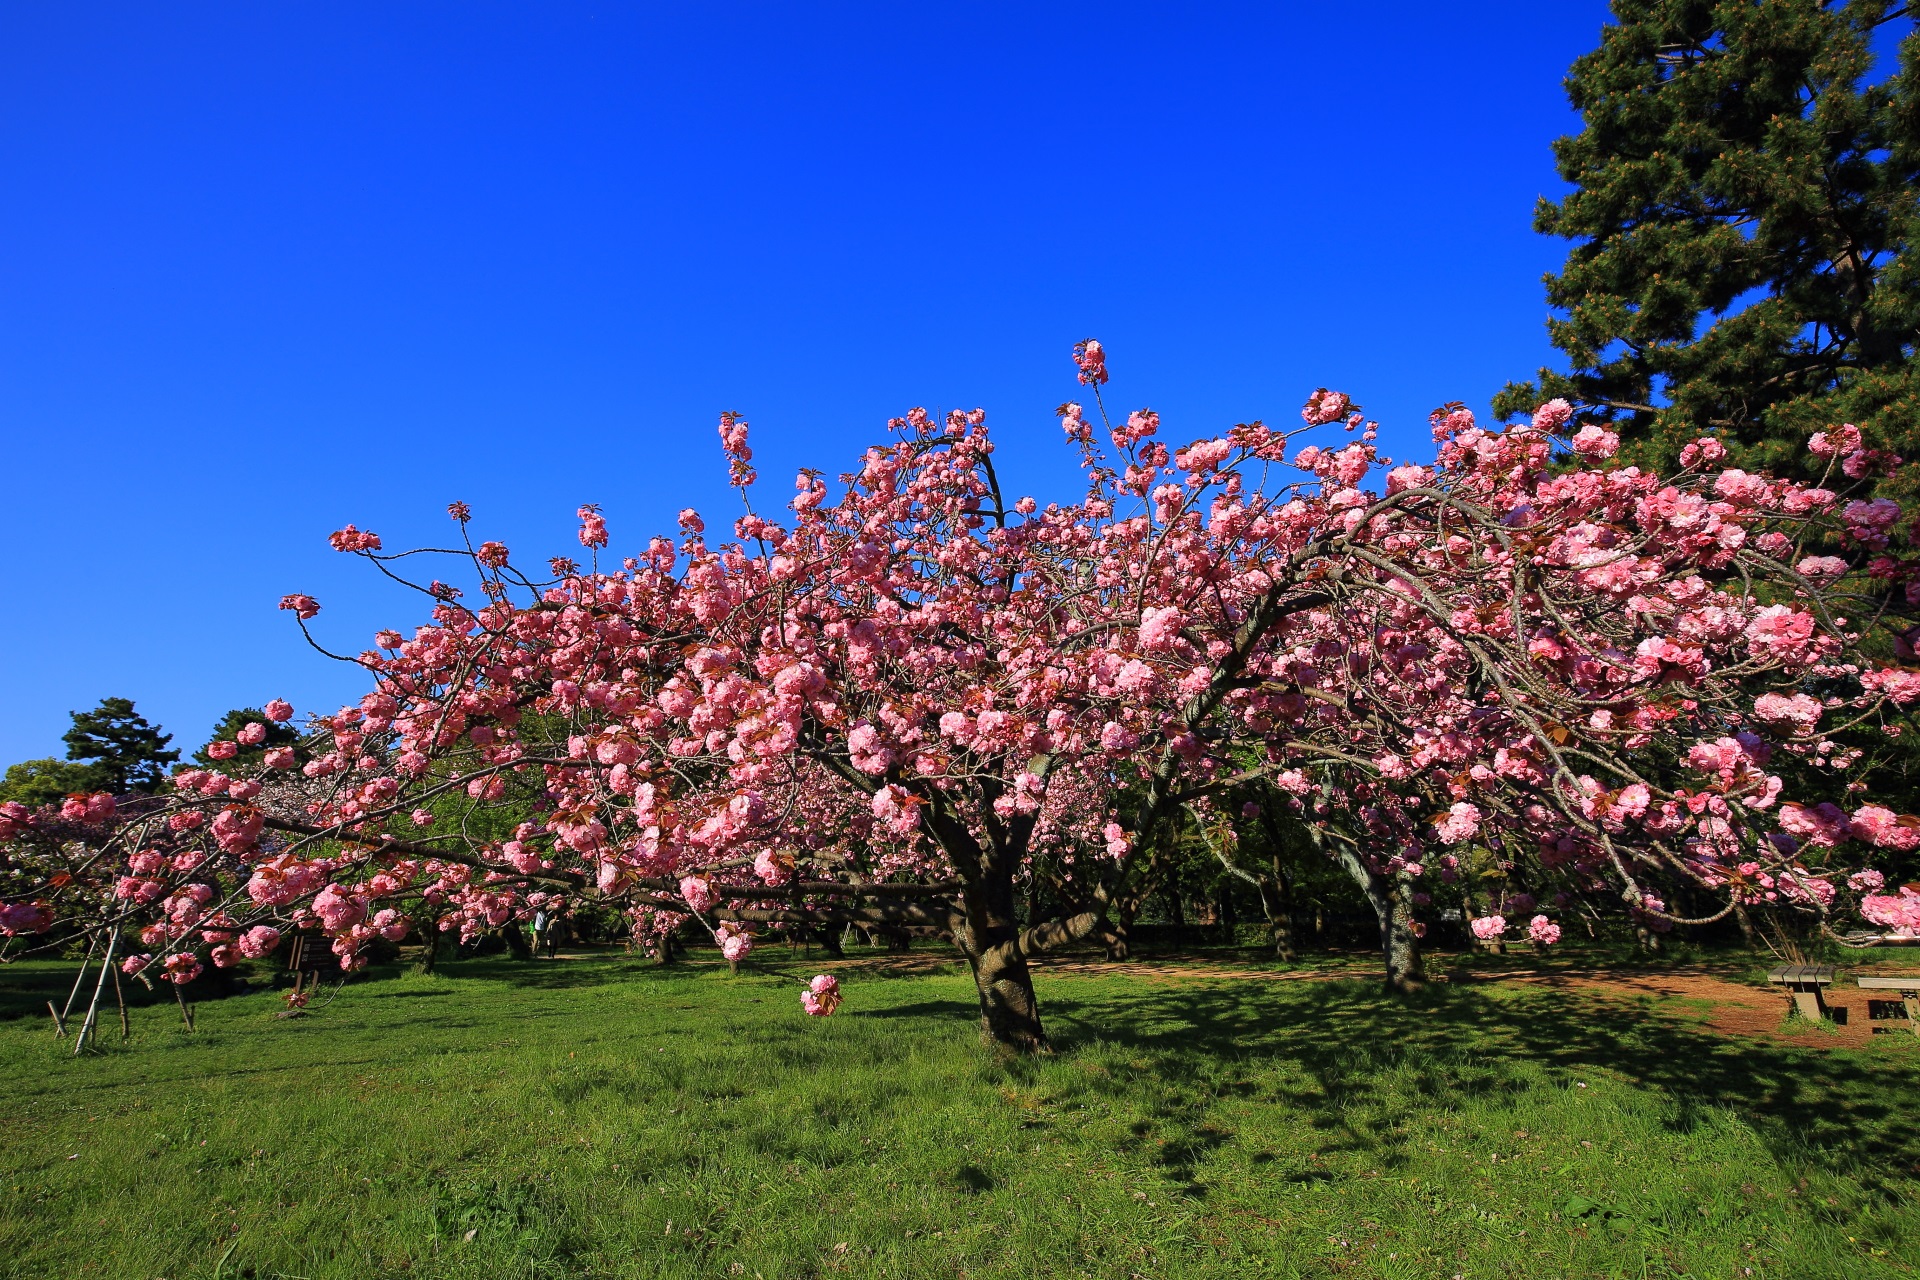 華やかとも鮮やかとも言えそうな色合いのピンクの八重桜